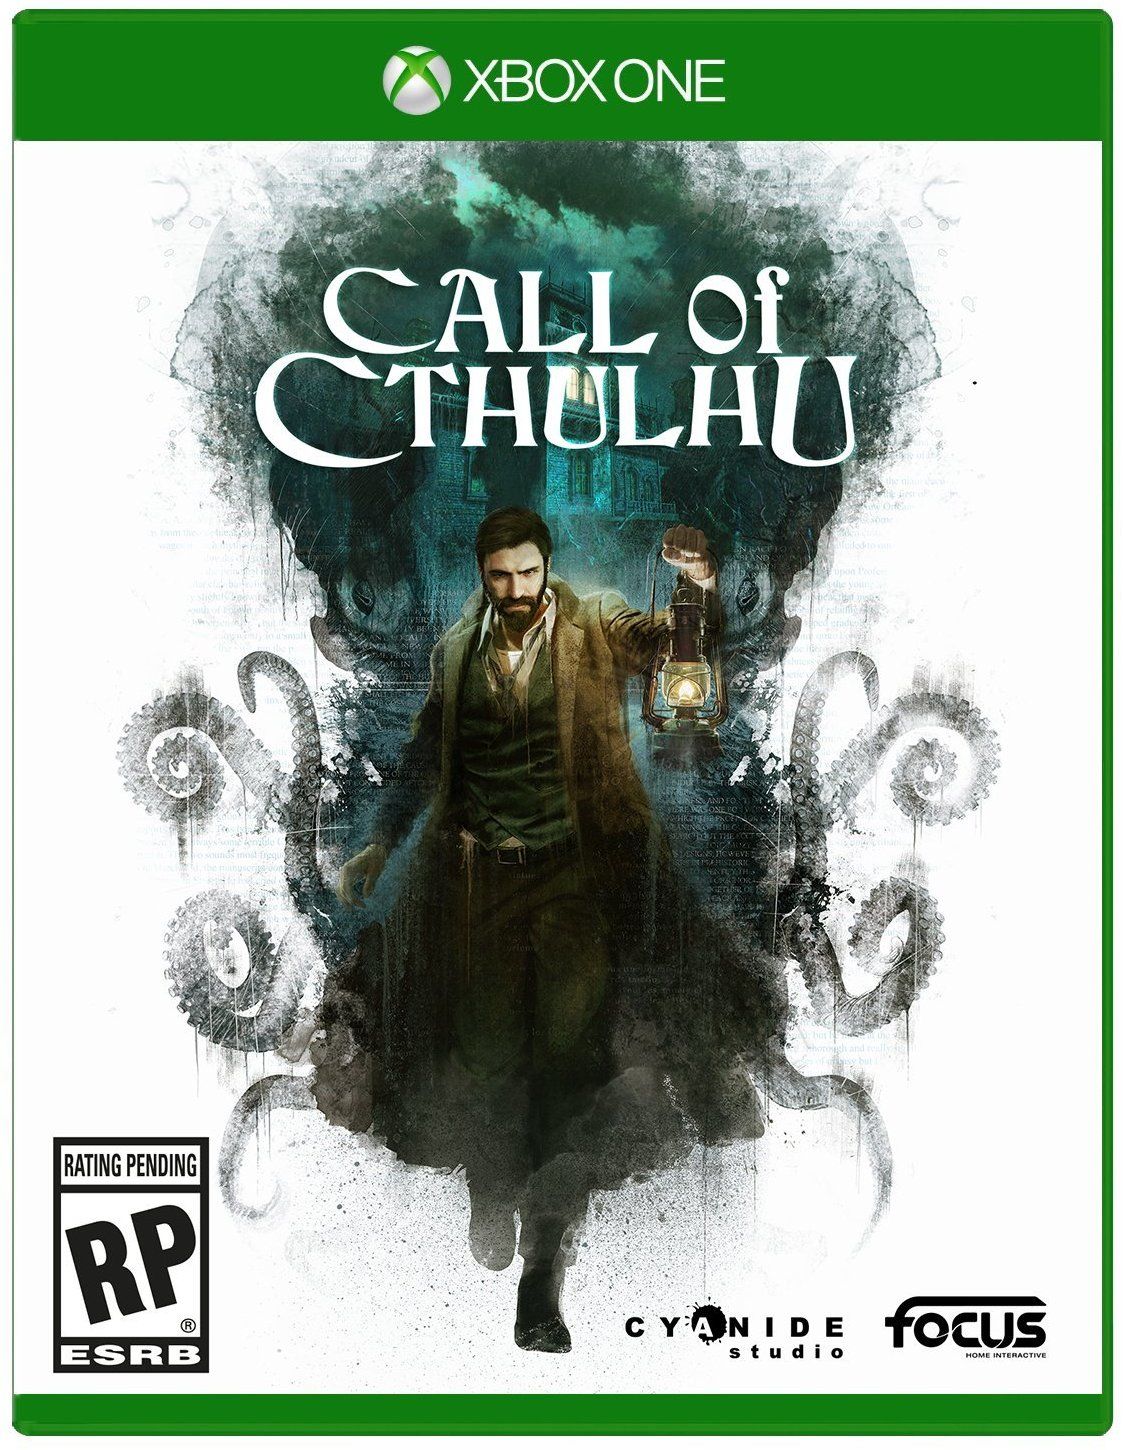 Korku oyunu Call of Cthulhu'nun kapak tasarımı ortaya çıktı